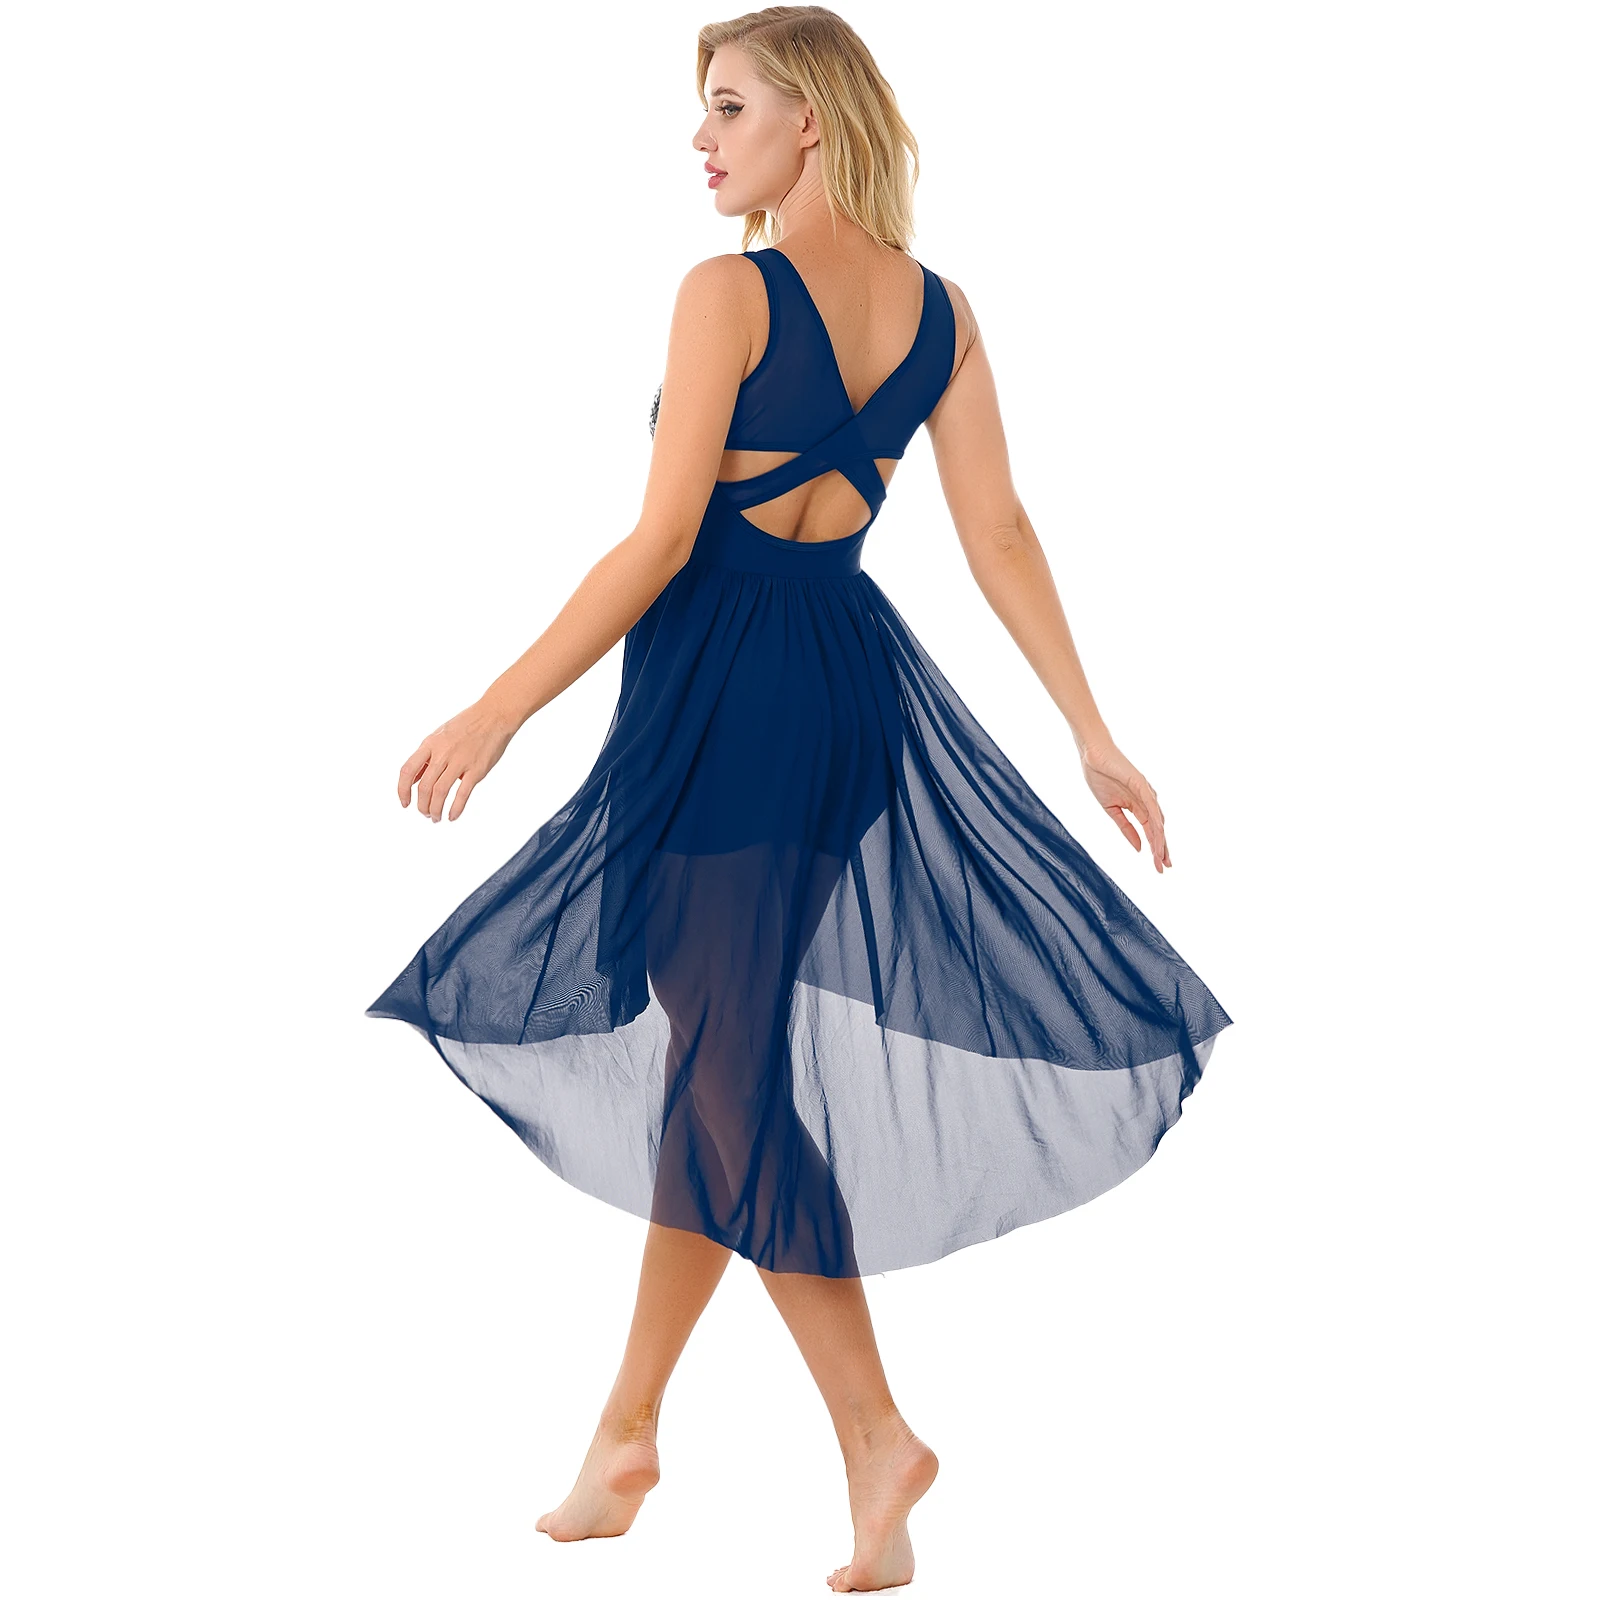 

Women Sparkling Sequined Leotard Dance Dress Sheer Mesh Crisscross Back Cutout Asymmetrical Hem Dance Dresses